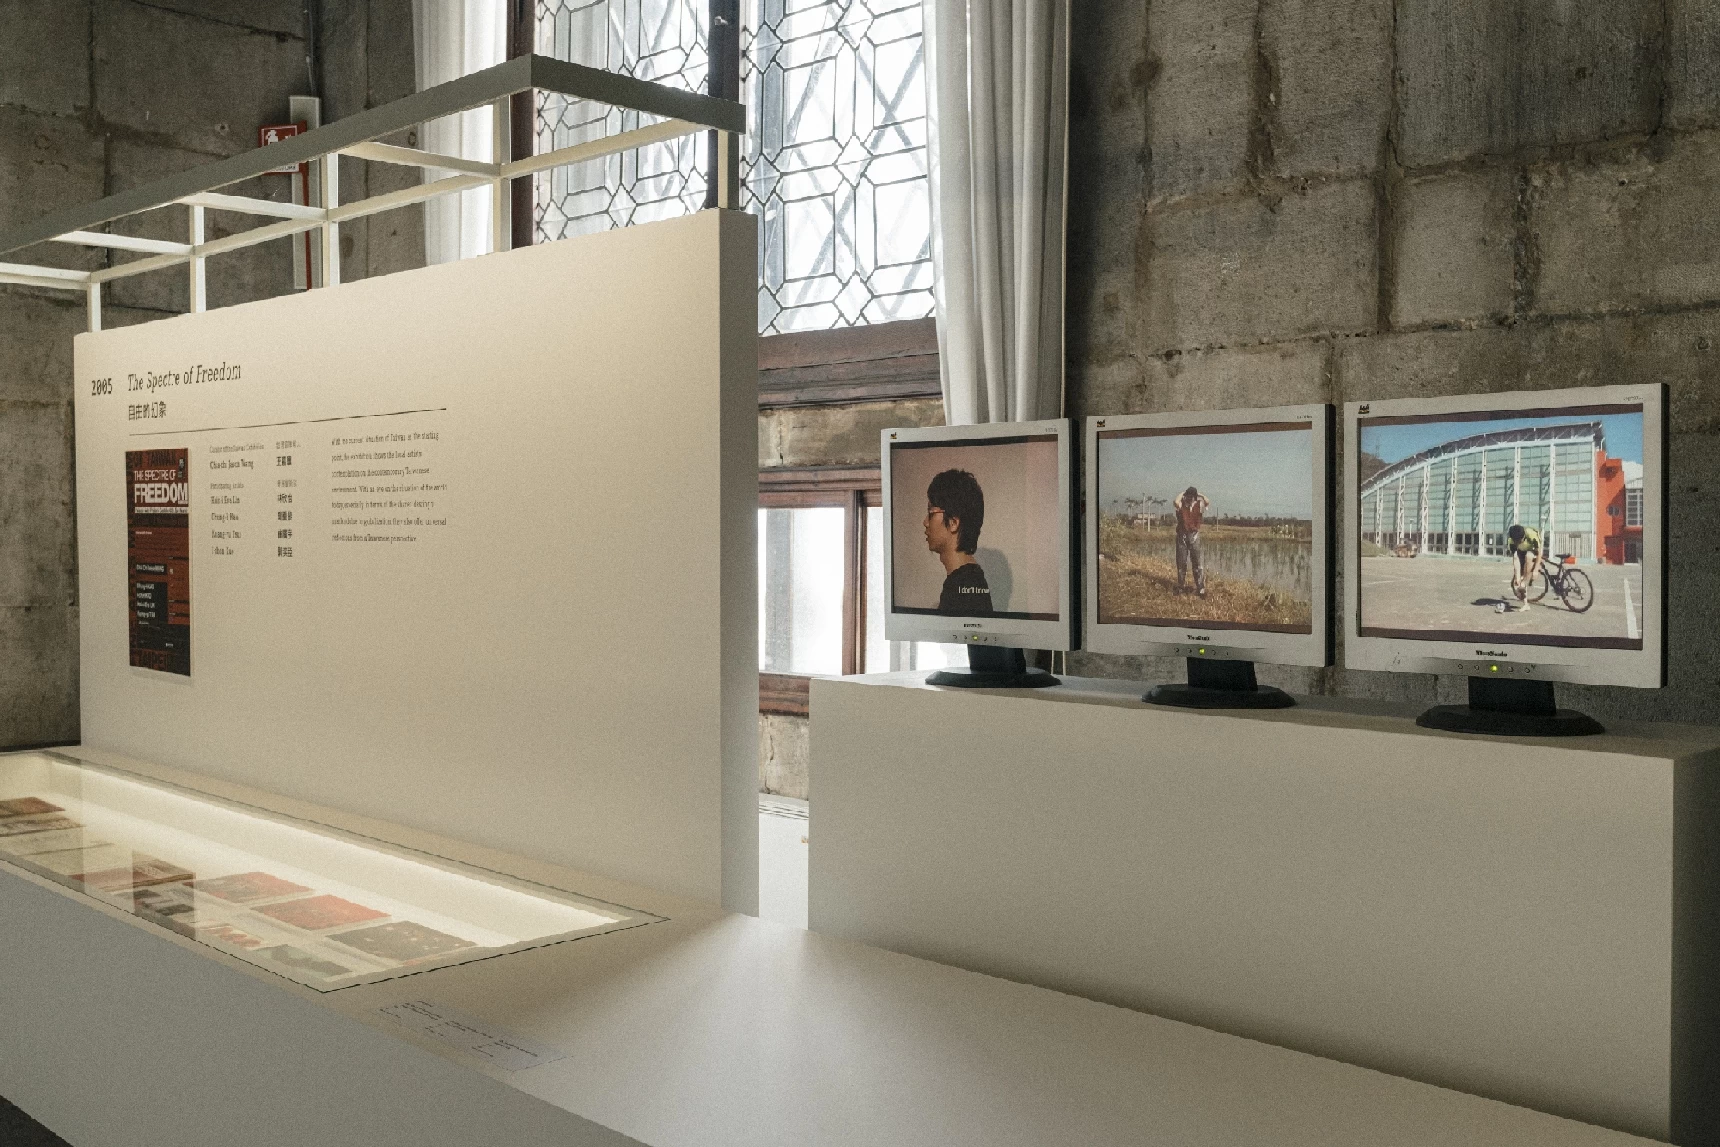 第59屆威尼斯雙年展台灣館「不可能的夢」展場之第51屆「自由的幻象」參展文獻與崔廣宇作品系列-圖片